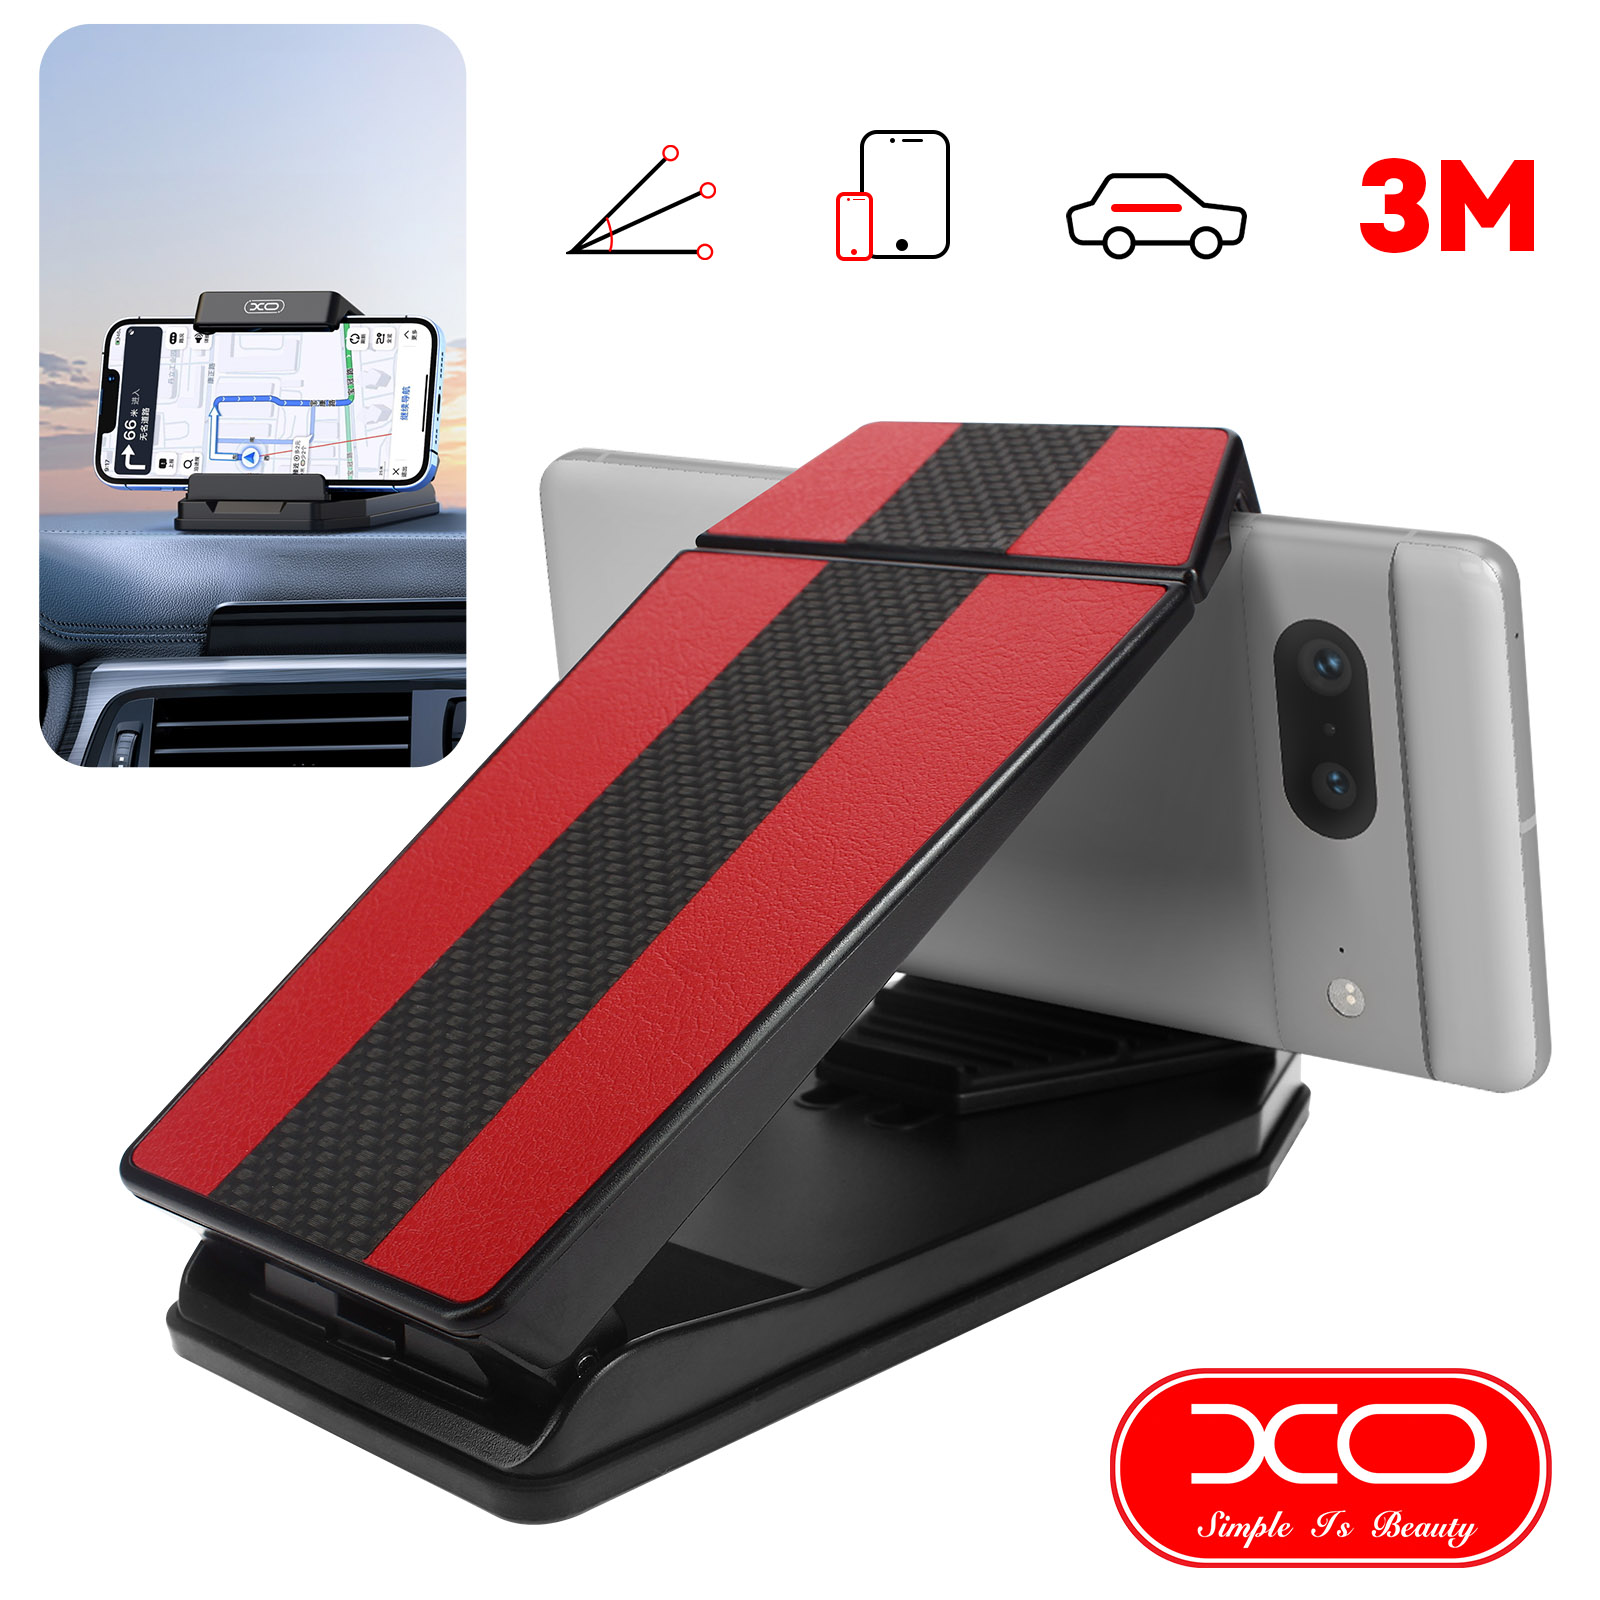 Soporte de Coche XO para Smartphone y Tablet, Fijación Adhesiva 3M